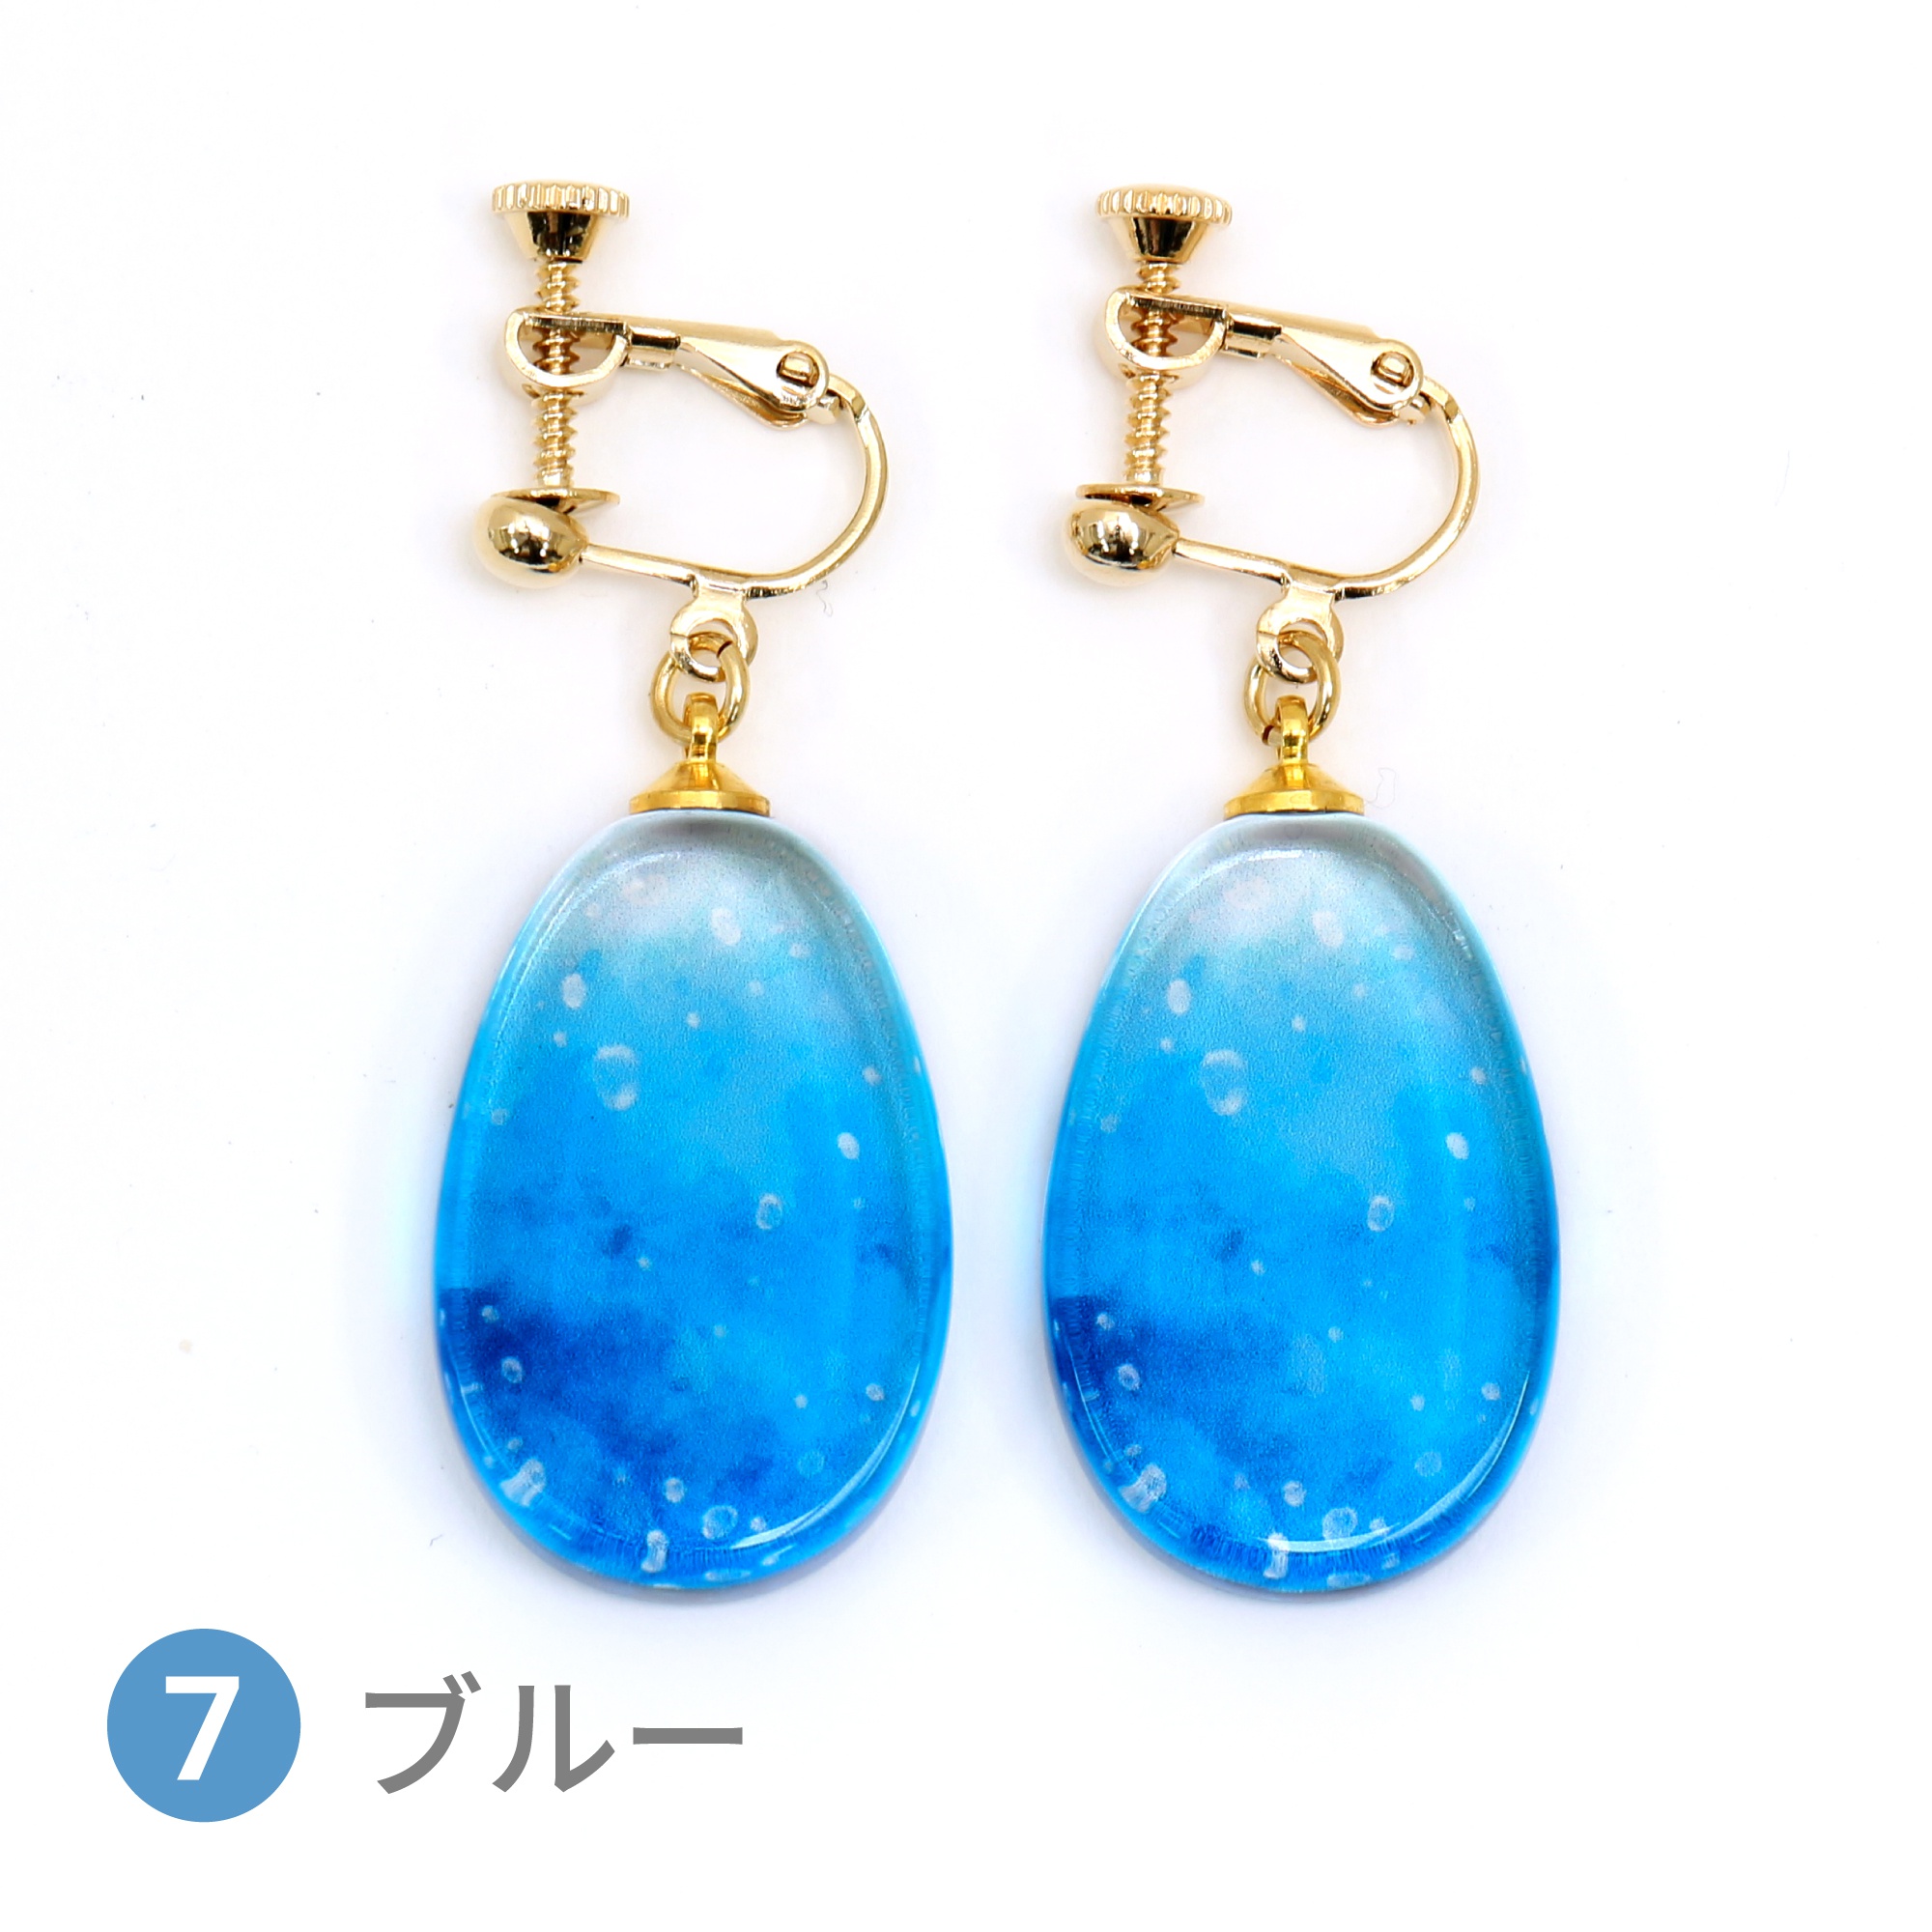 Glass accessories Earring SODA blue drop shape